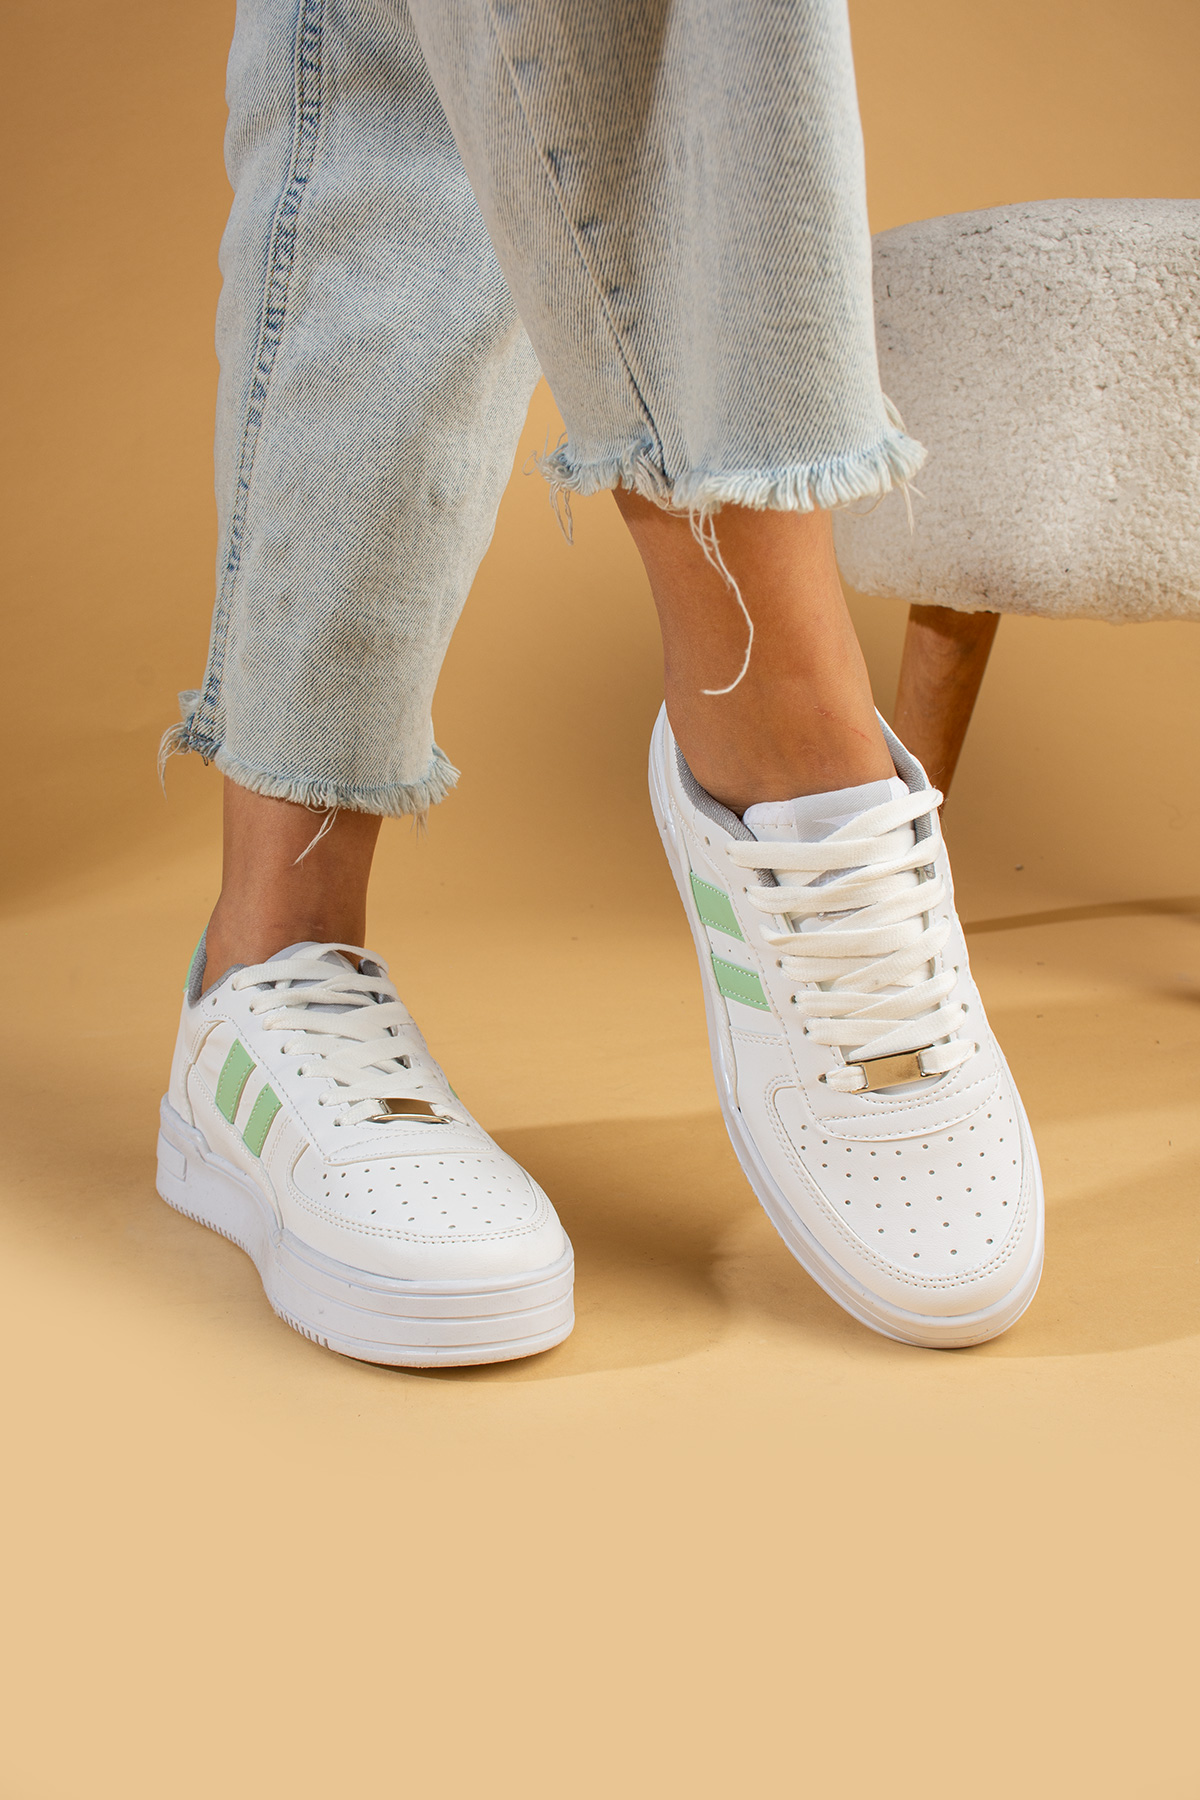 Pembe Potin Bağcıklı Comfort Taban Şeritli Kadın Sneaker 001-1005-24BeyazYeşil - Beyaz